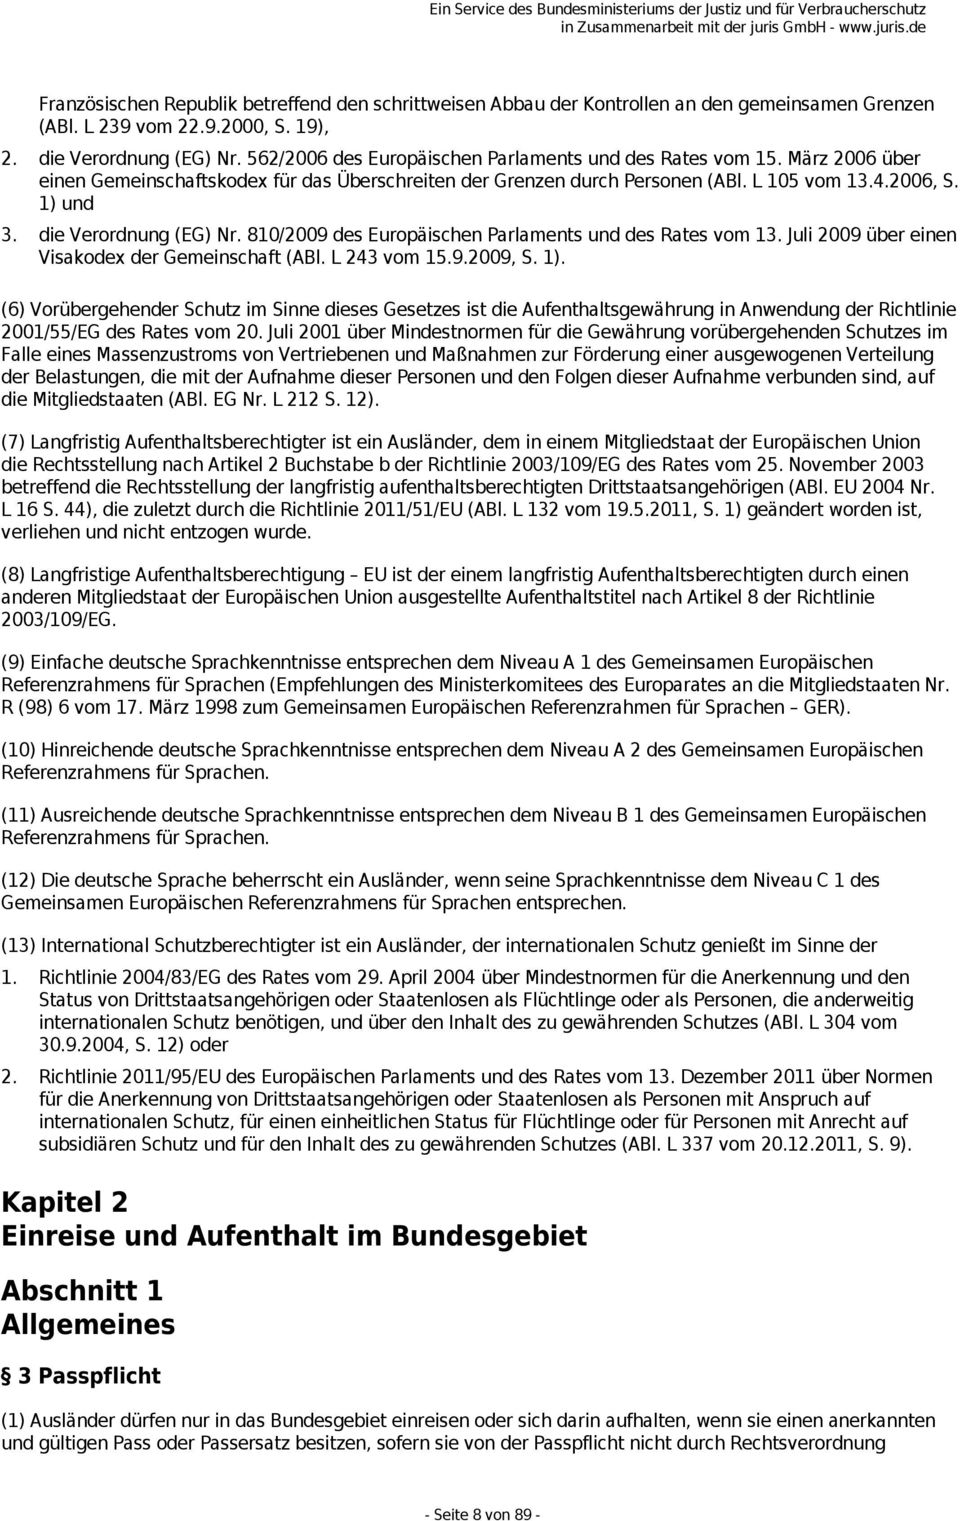 die Verordnung (EG) Nr. 810/2009 des Europäischen Parlaments und des Rates vom 13. Juli 2009 über einen Visakodex der Gemeinschaft (ABl. L 243 vom 15.9.2009, S. 1).